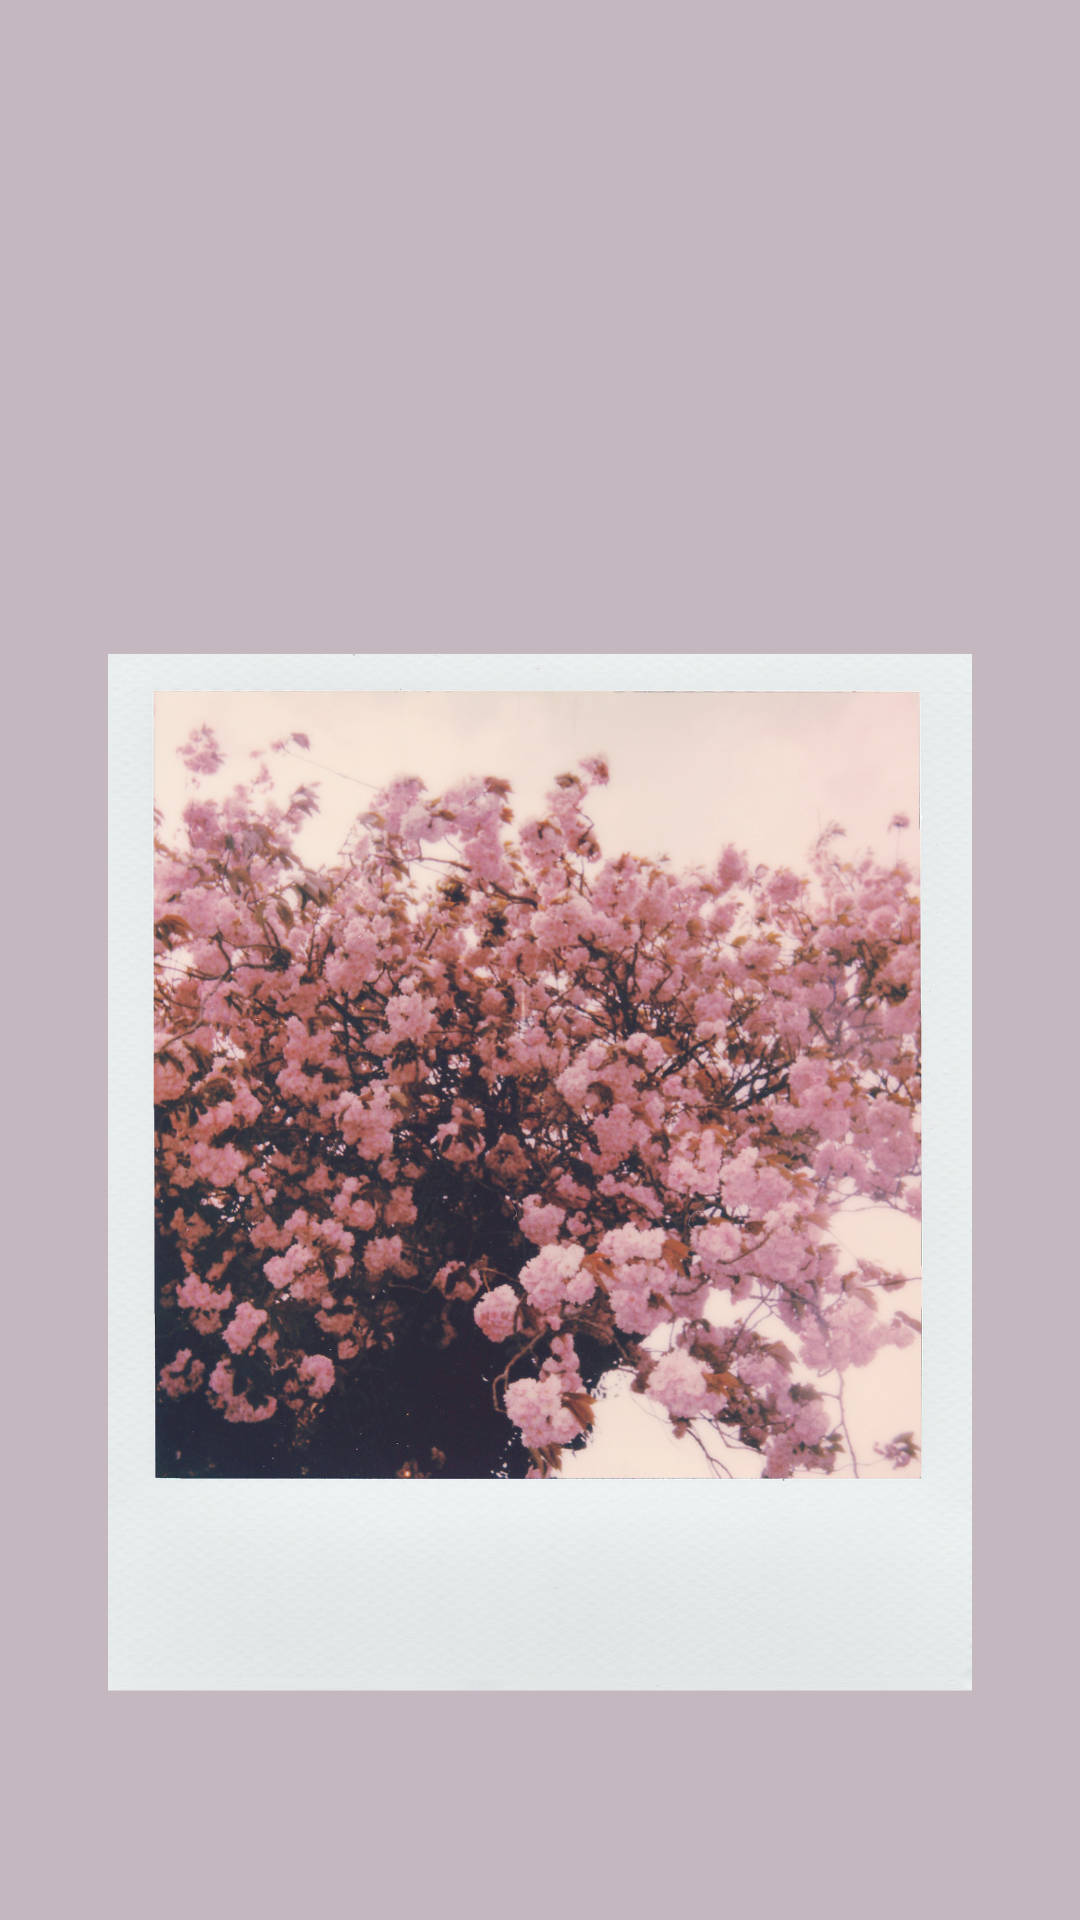 Polaroid Flower Photo Against Beige Aesthetic Phone Wallpaper